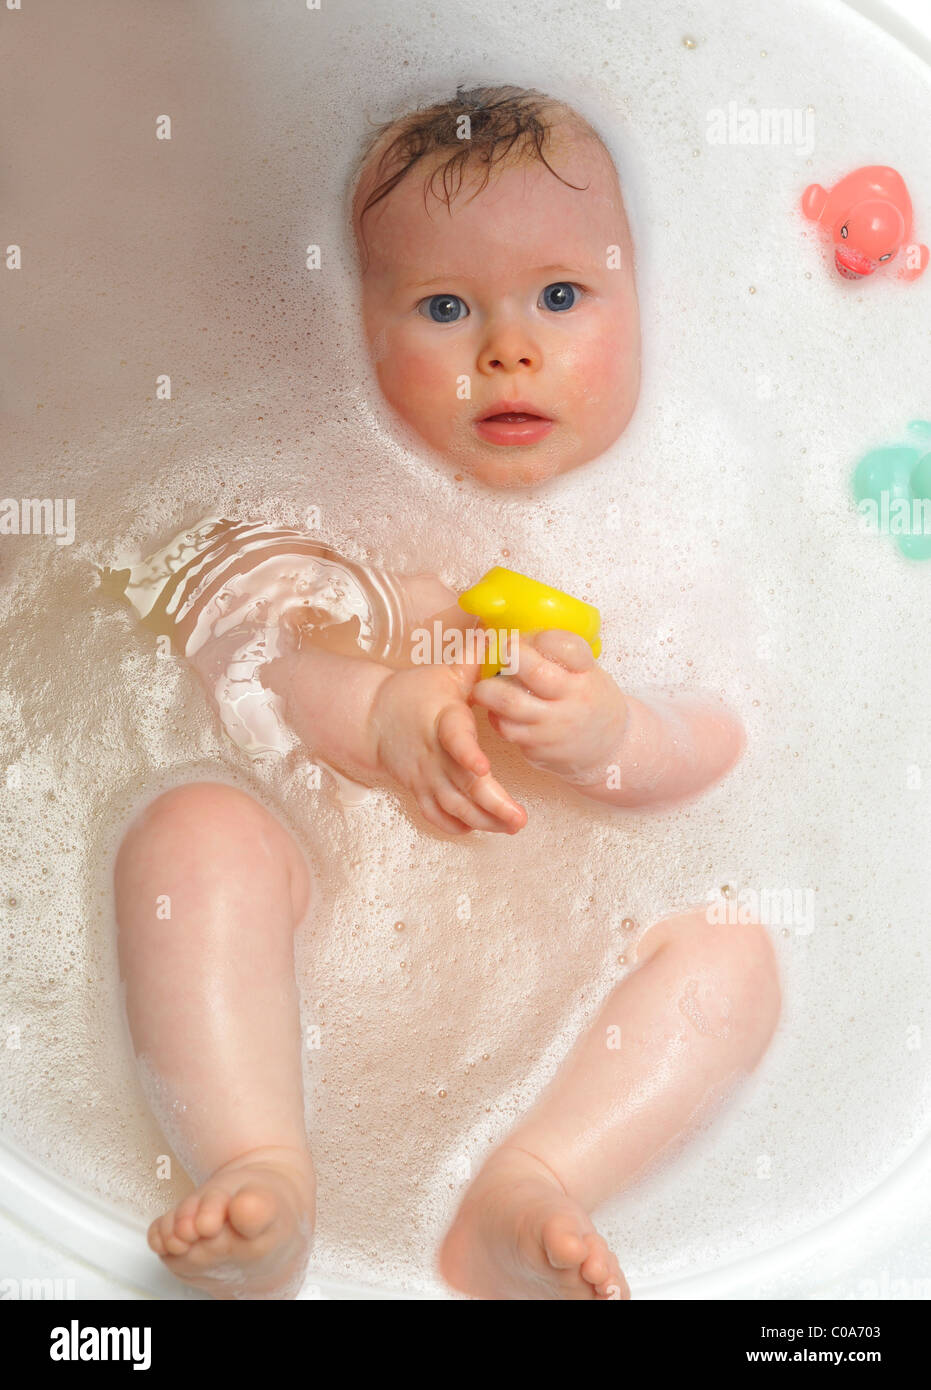 süße 6 Monate alte Baby Badewanne Baden Spielzeug Enten spielen Kleinkind sauber schöne schöne Wäsche Sicherheit gemütlich Stockfoto